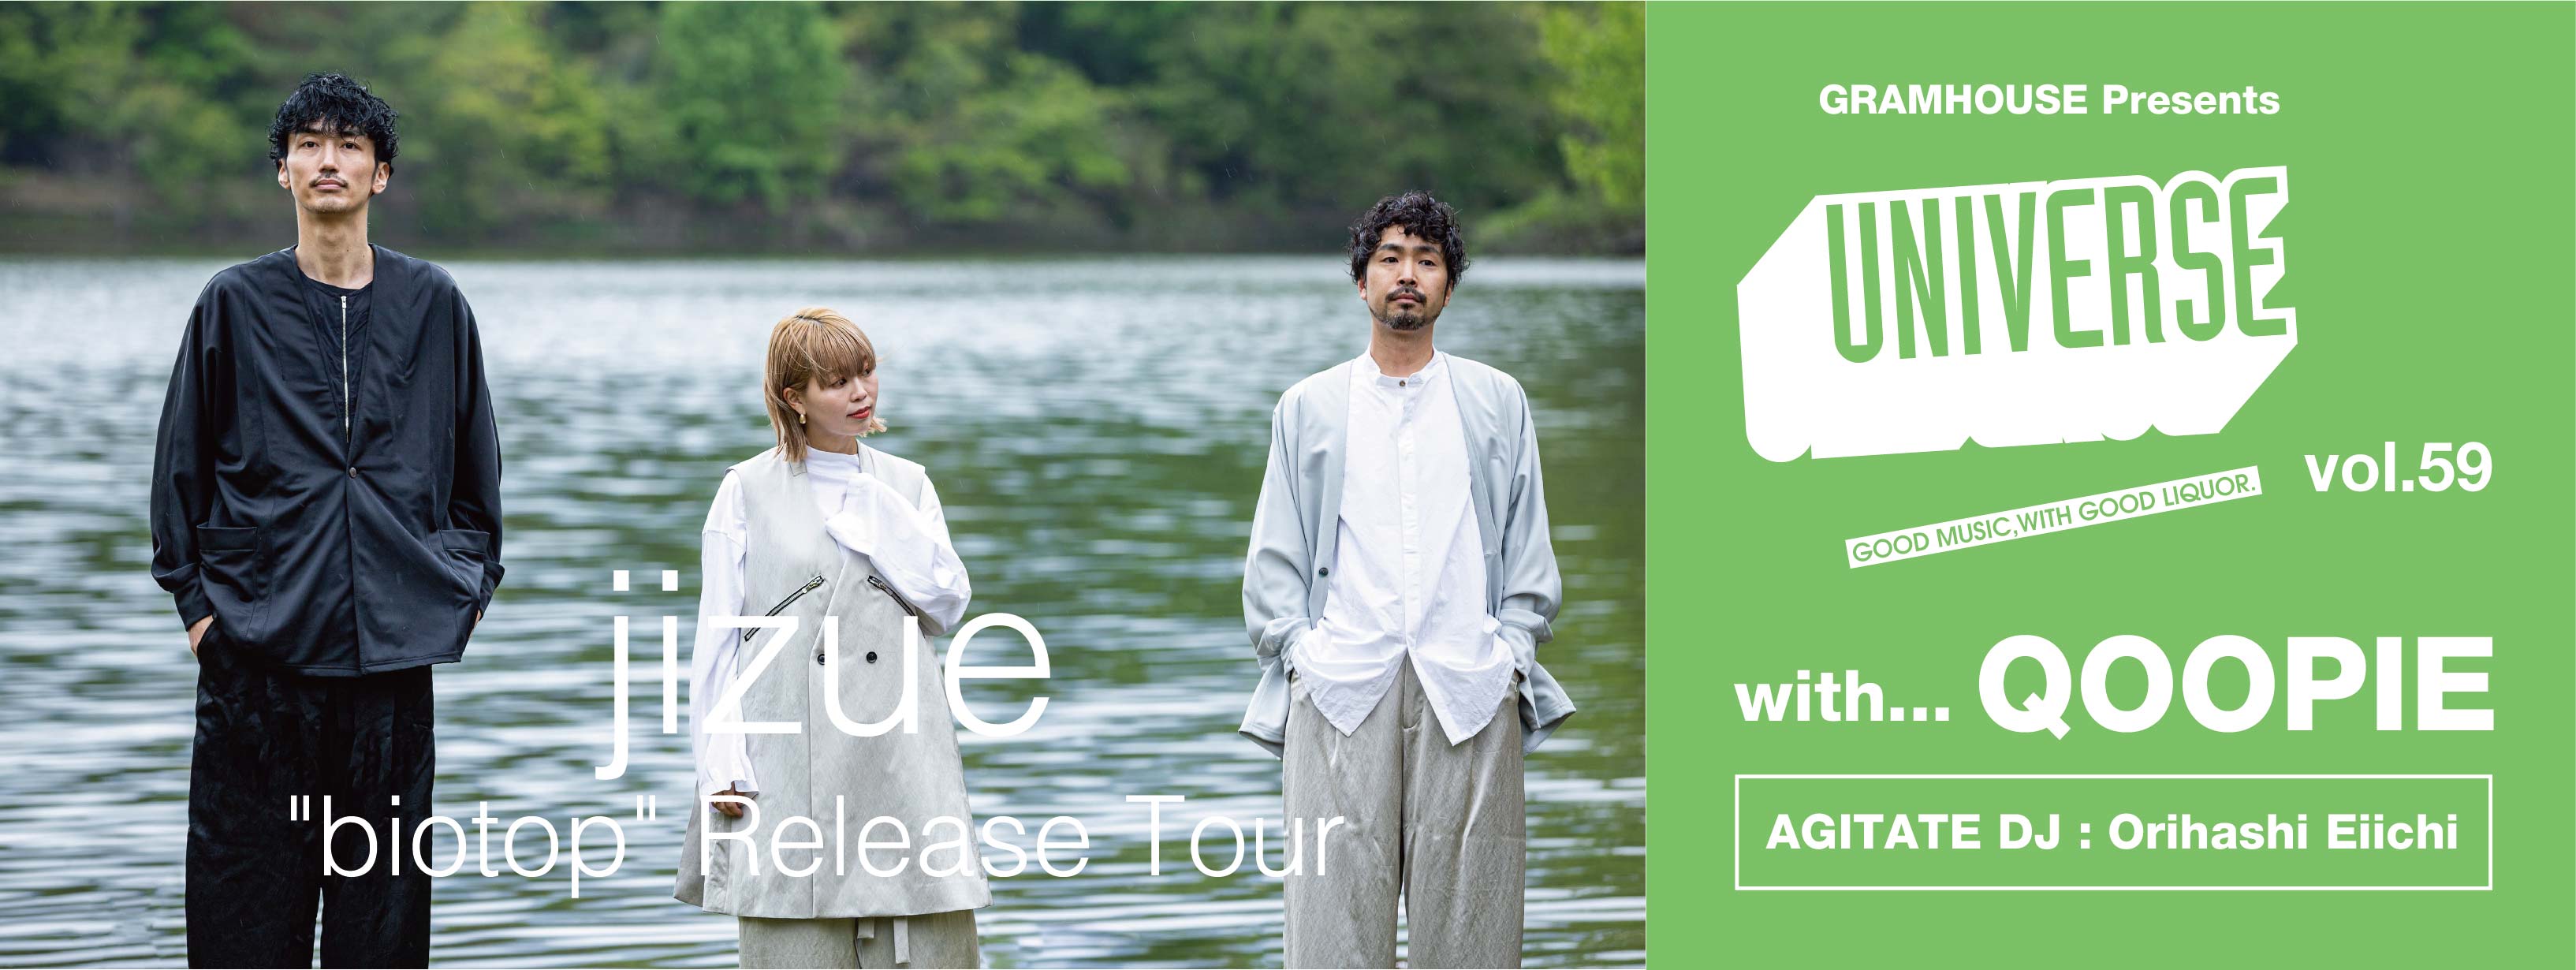 UNIVERSE vol.59 – jizue “biotop” Release Tour